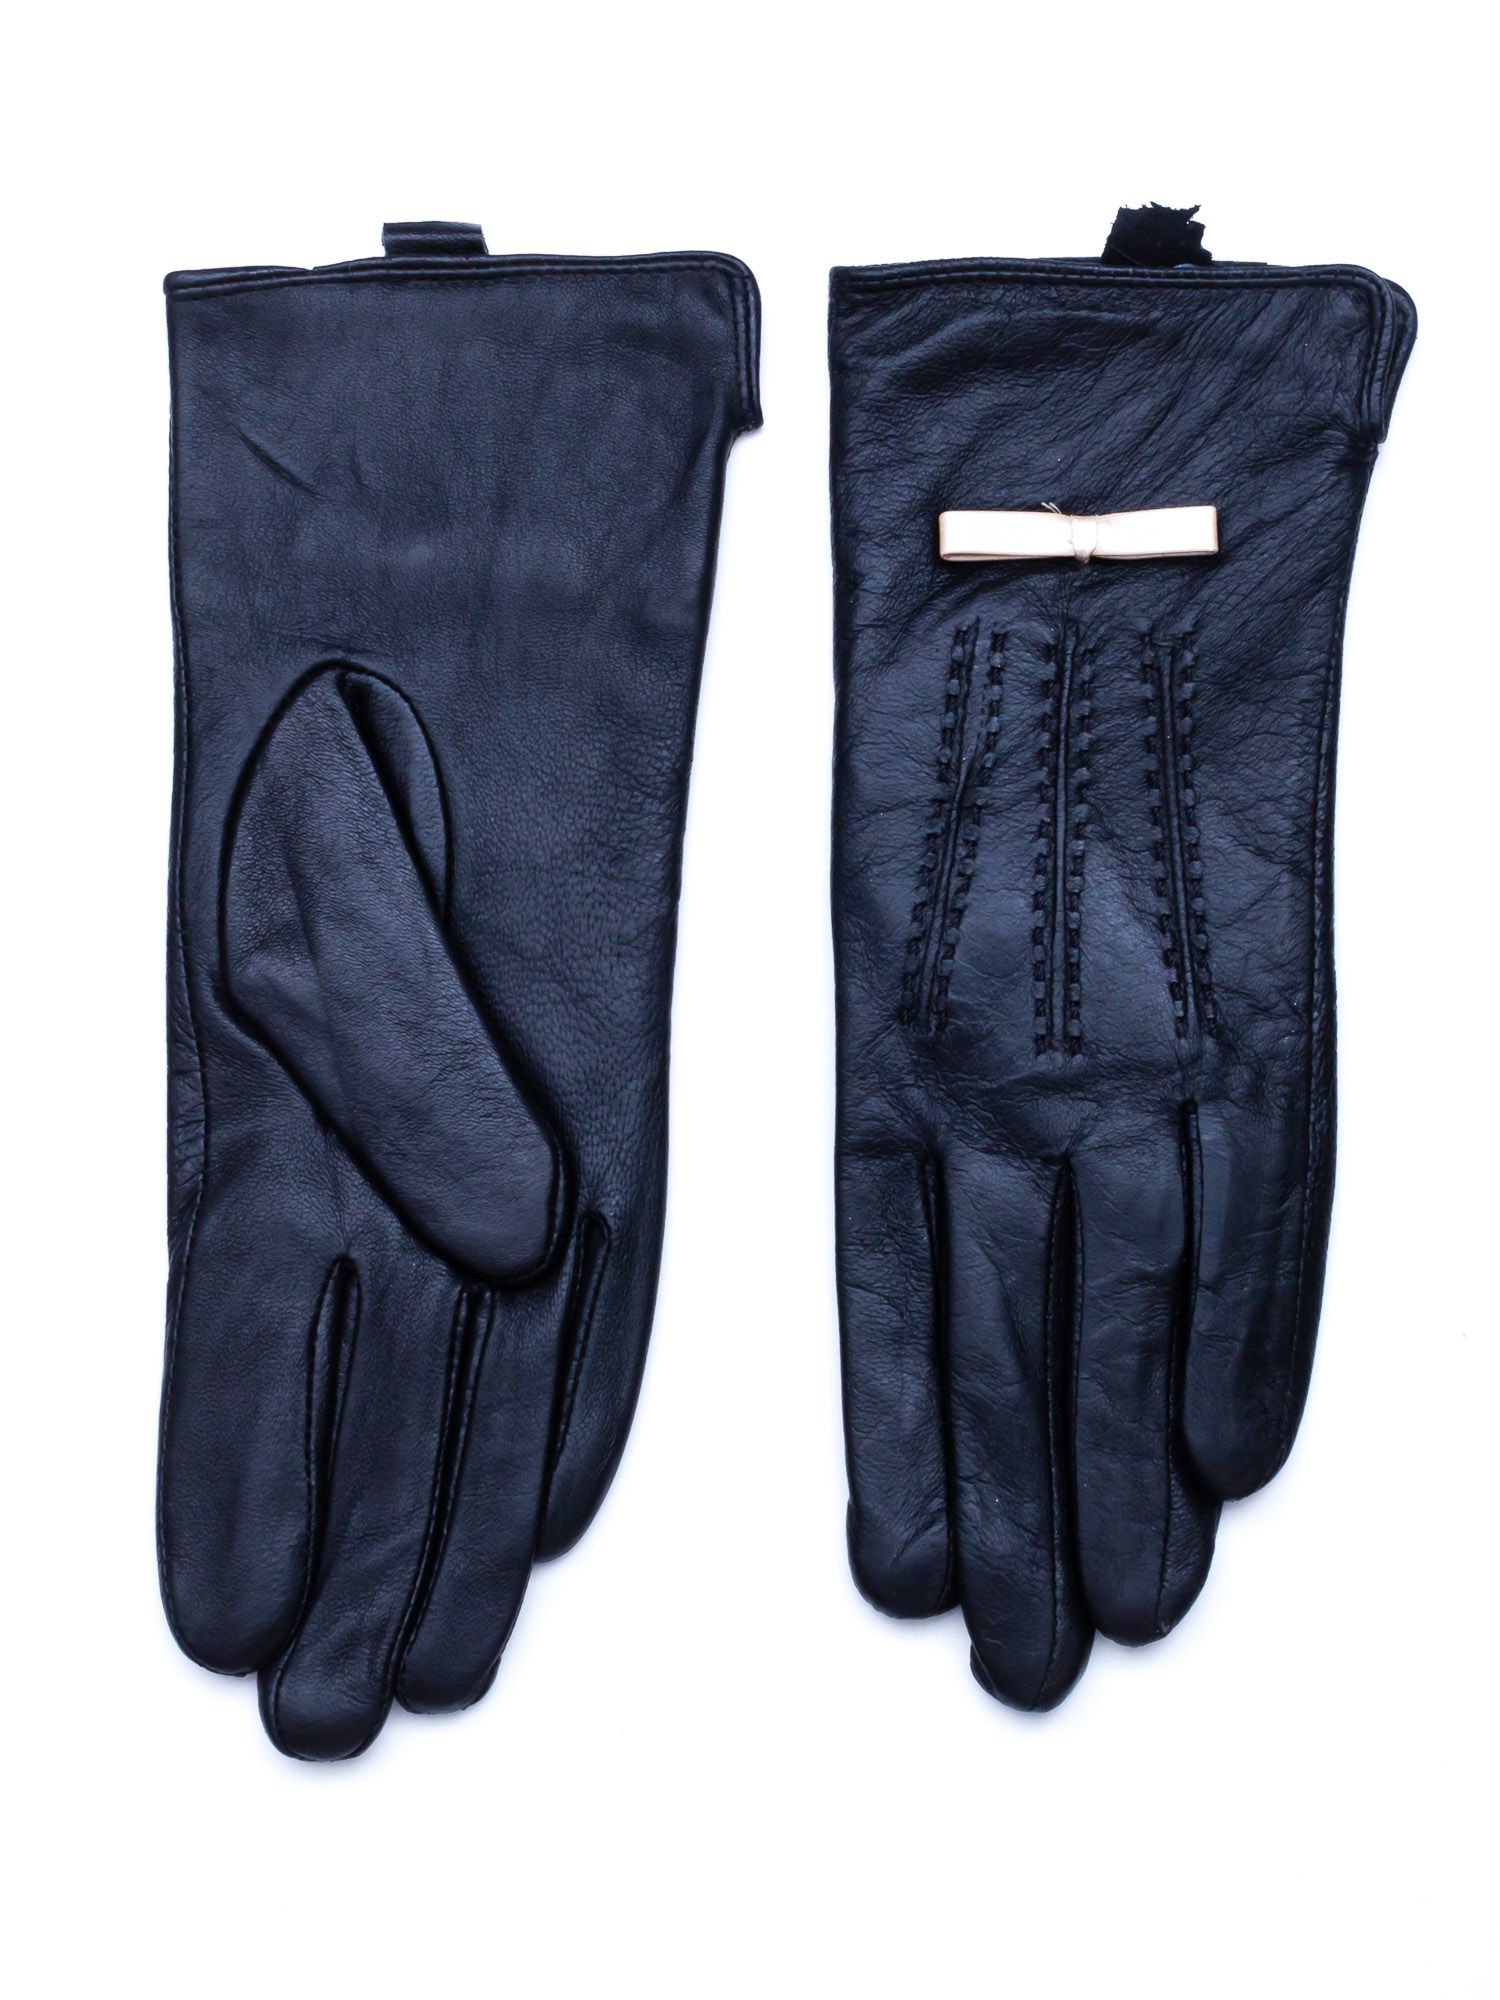 Dámske čierne rukavice - M